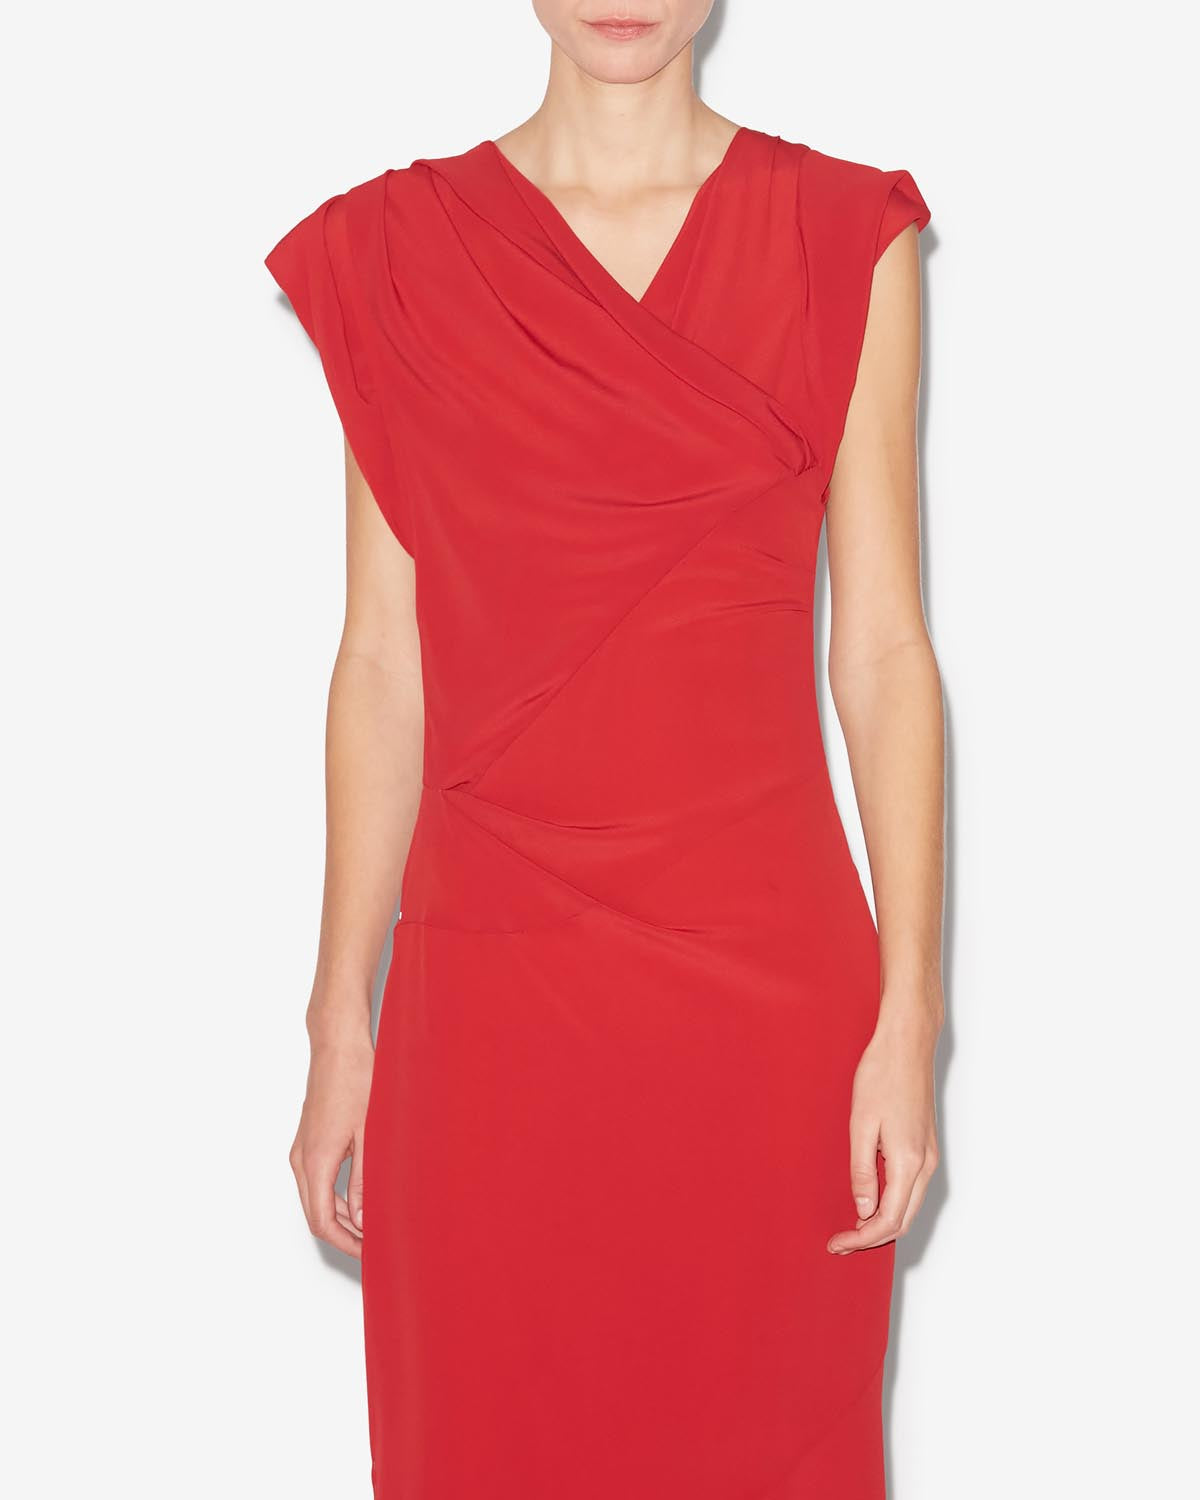 Kleid kidena Woman Scarlet red 5